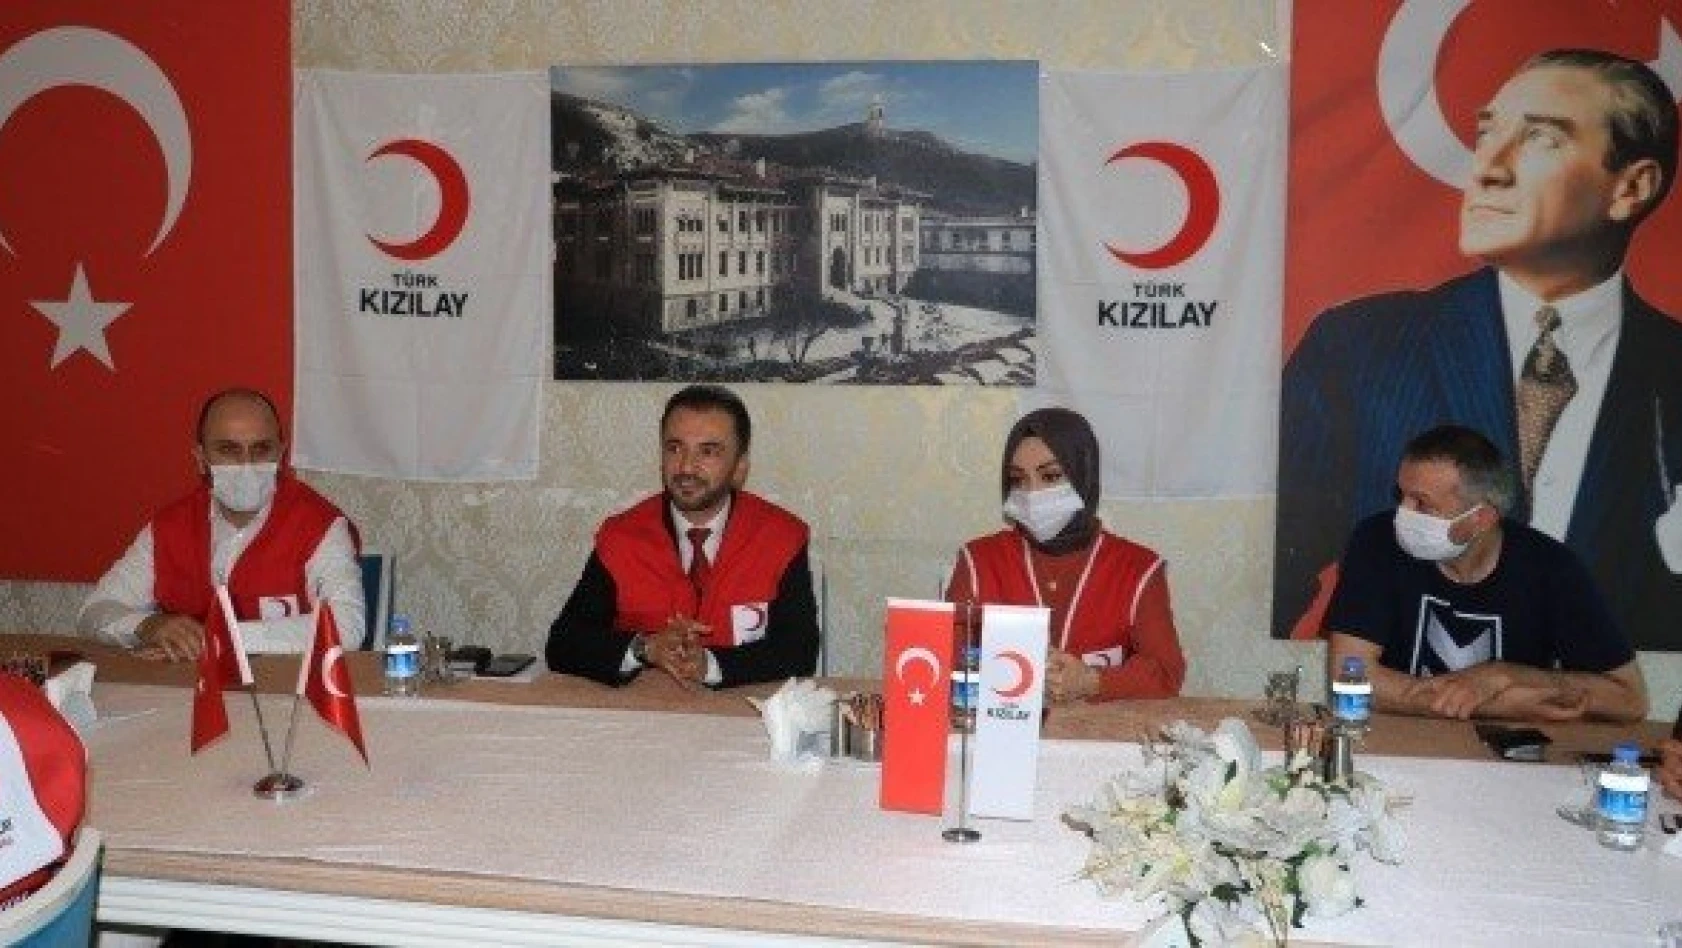 Kastamonu'da Türk Kızılay ekipleri 60 bin kişinin yüreğine dokundu